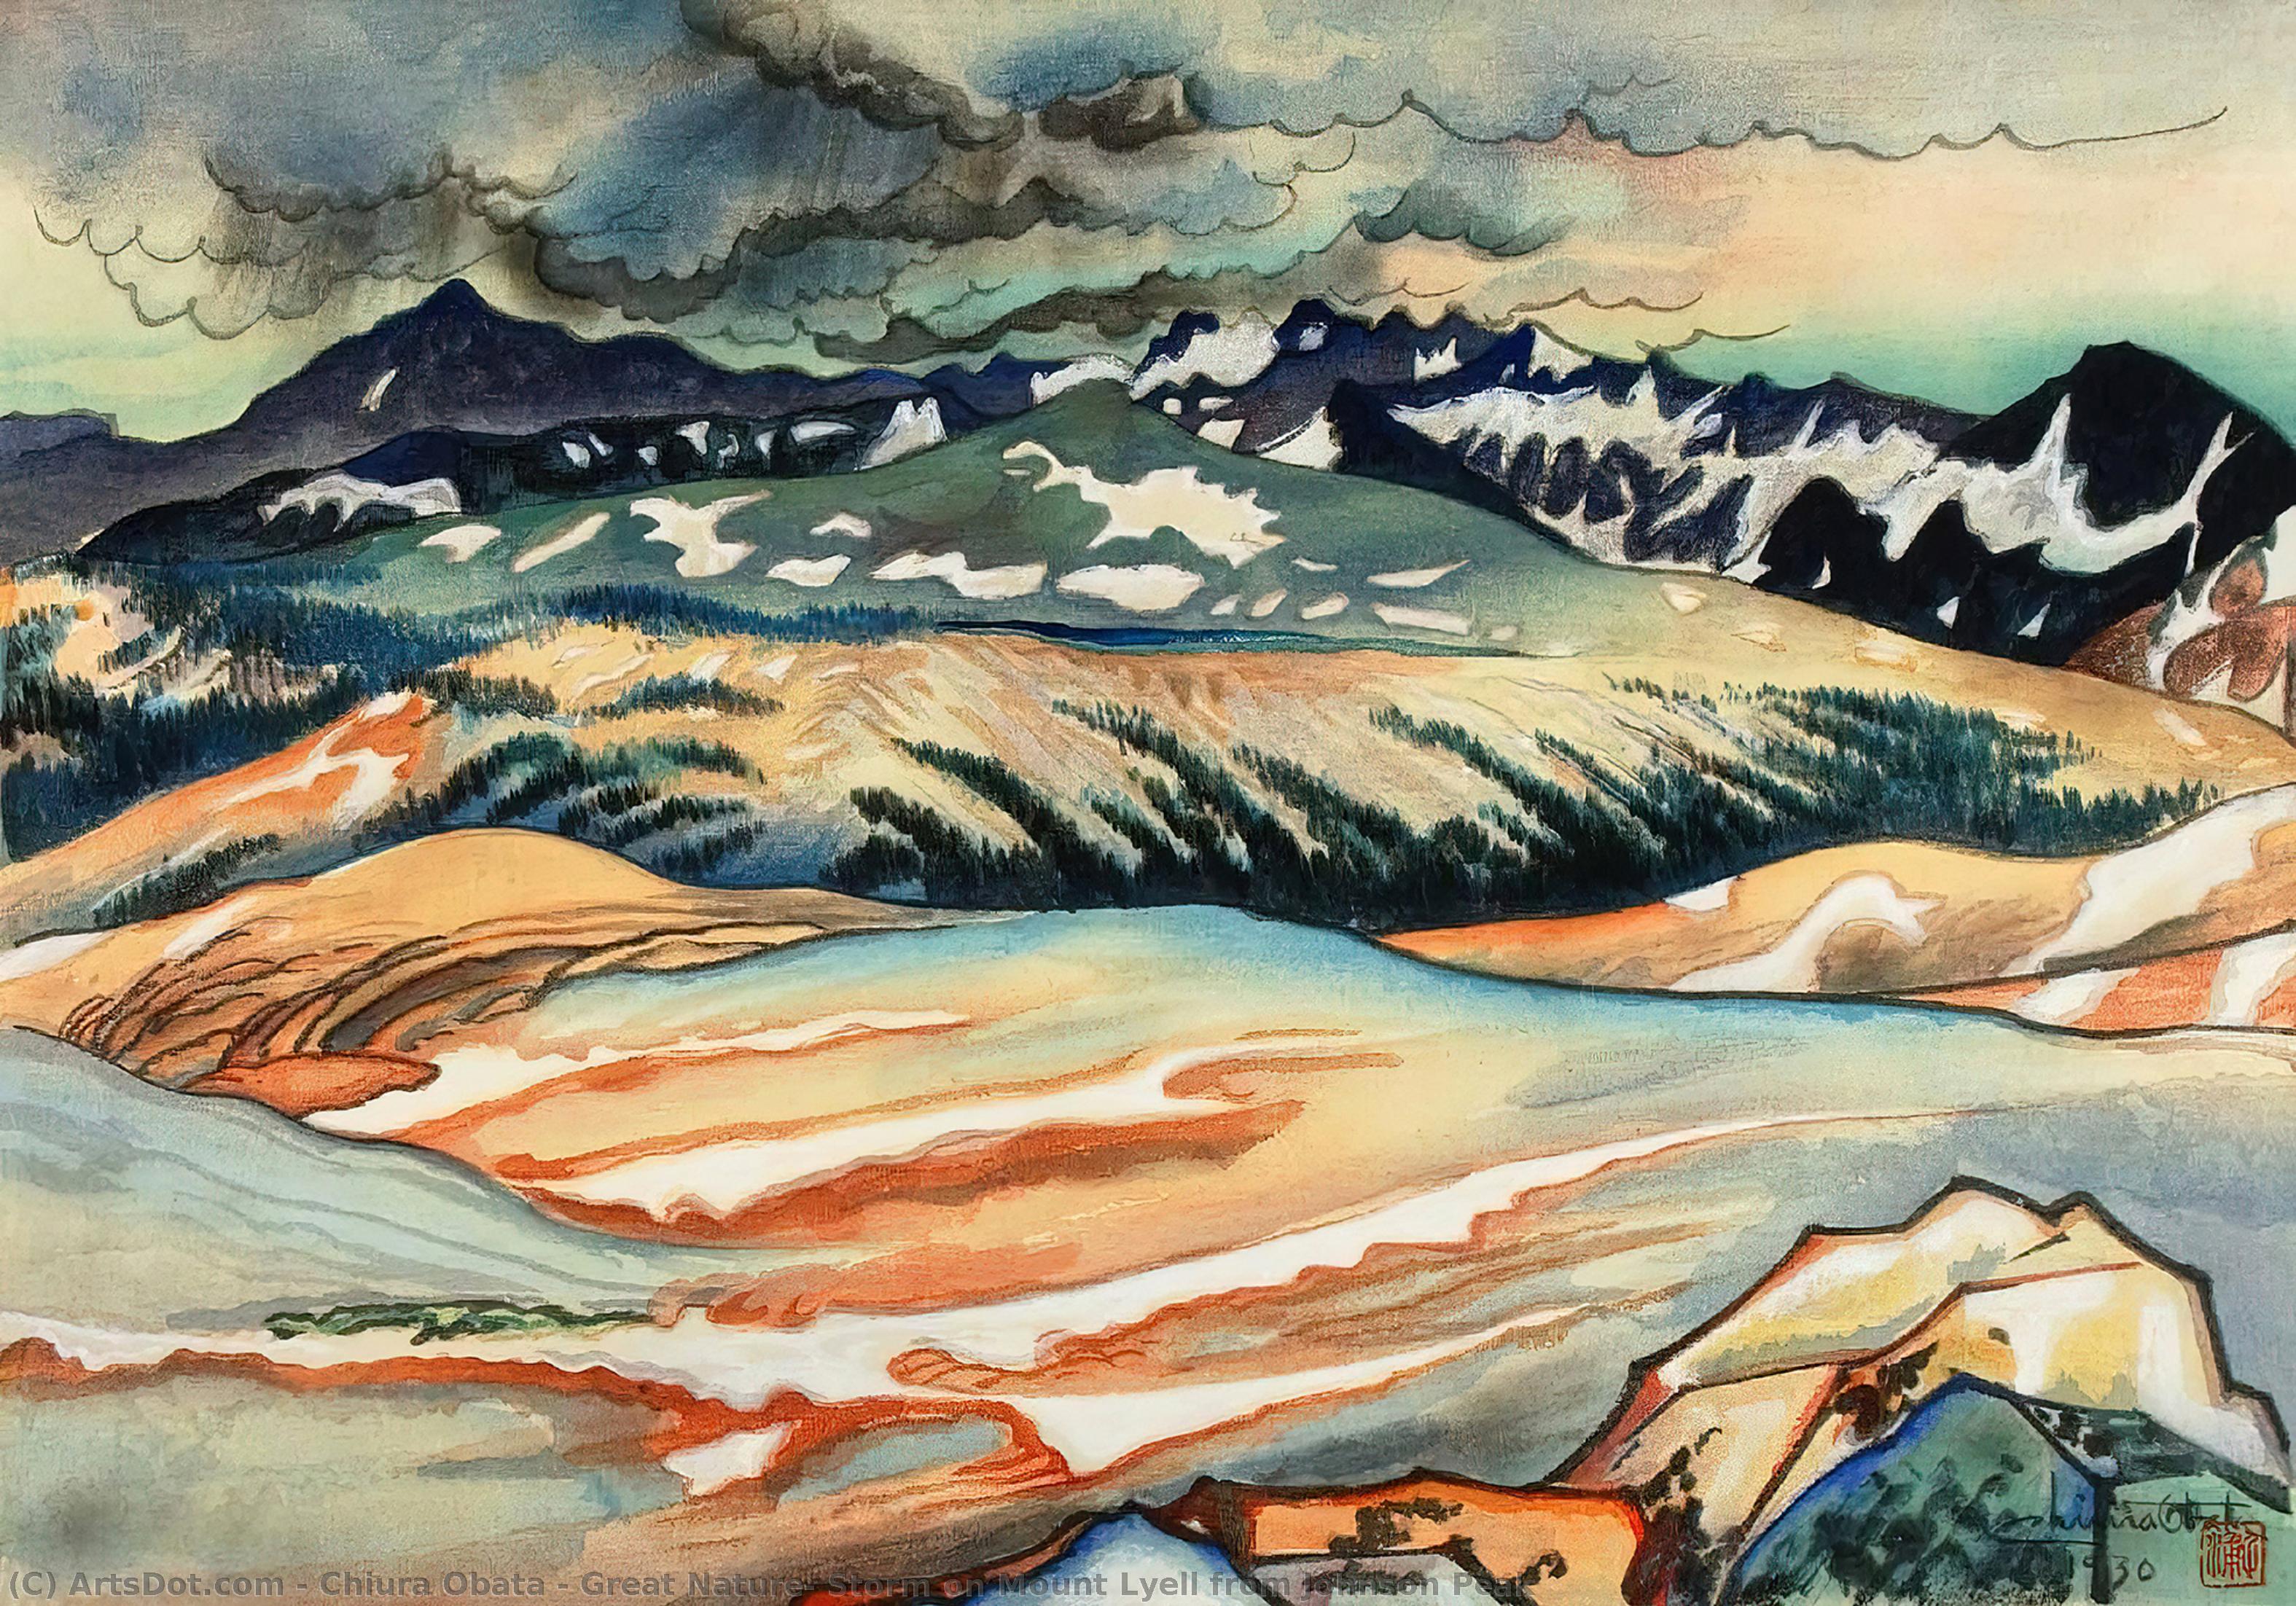 Wikioo.org - Bách khoa toàn thư về mỹ thuật - Vẽ tranh, Tác phẩm nghệ thuật Chiura Obata - Great Nature, Storm on Mount Lyell from Johnson Peak